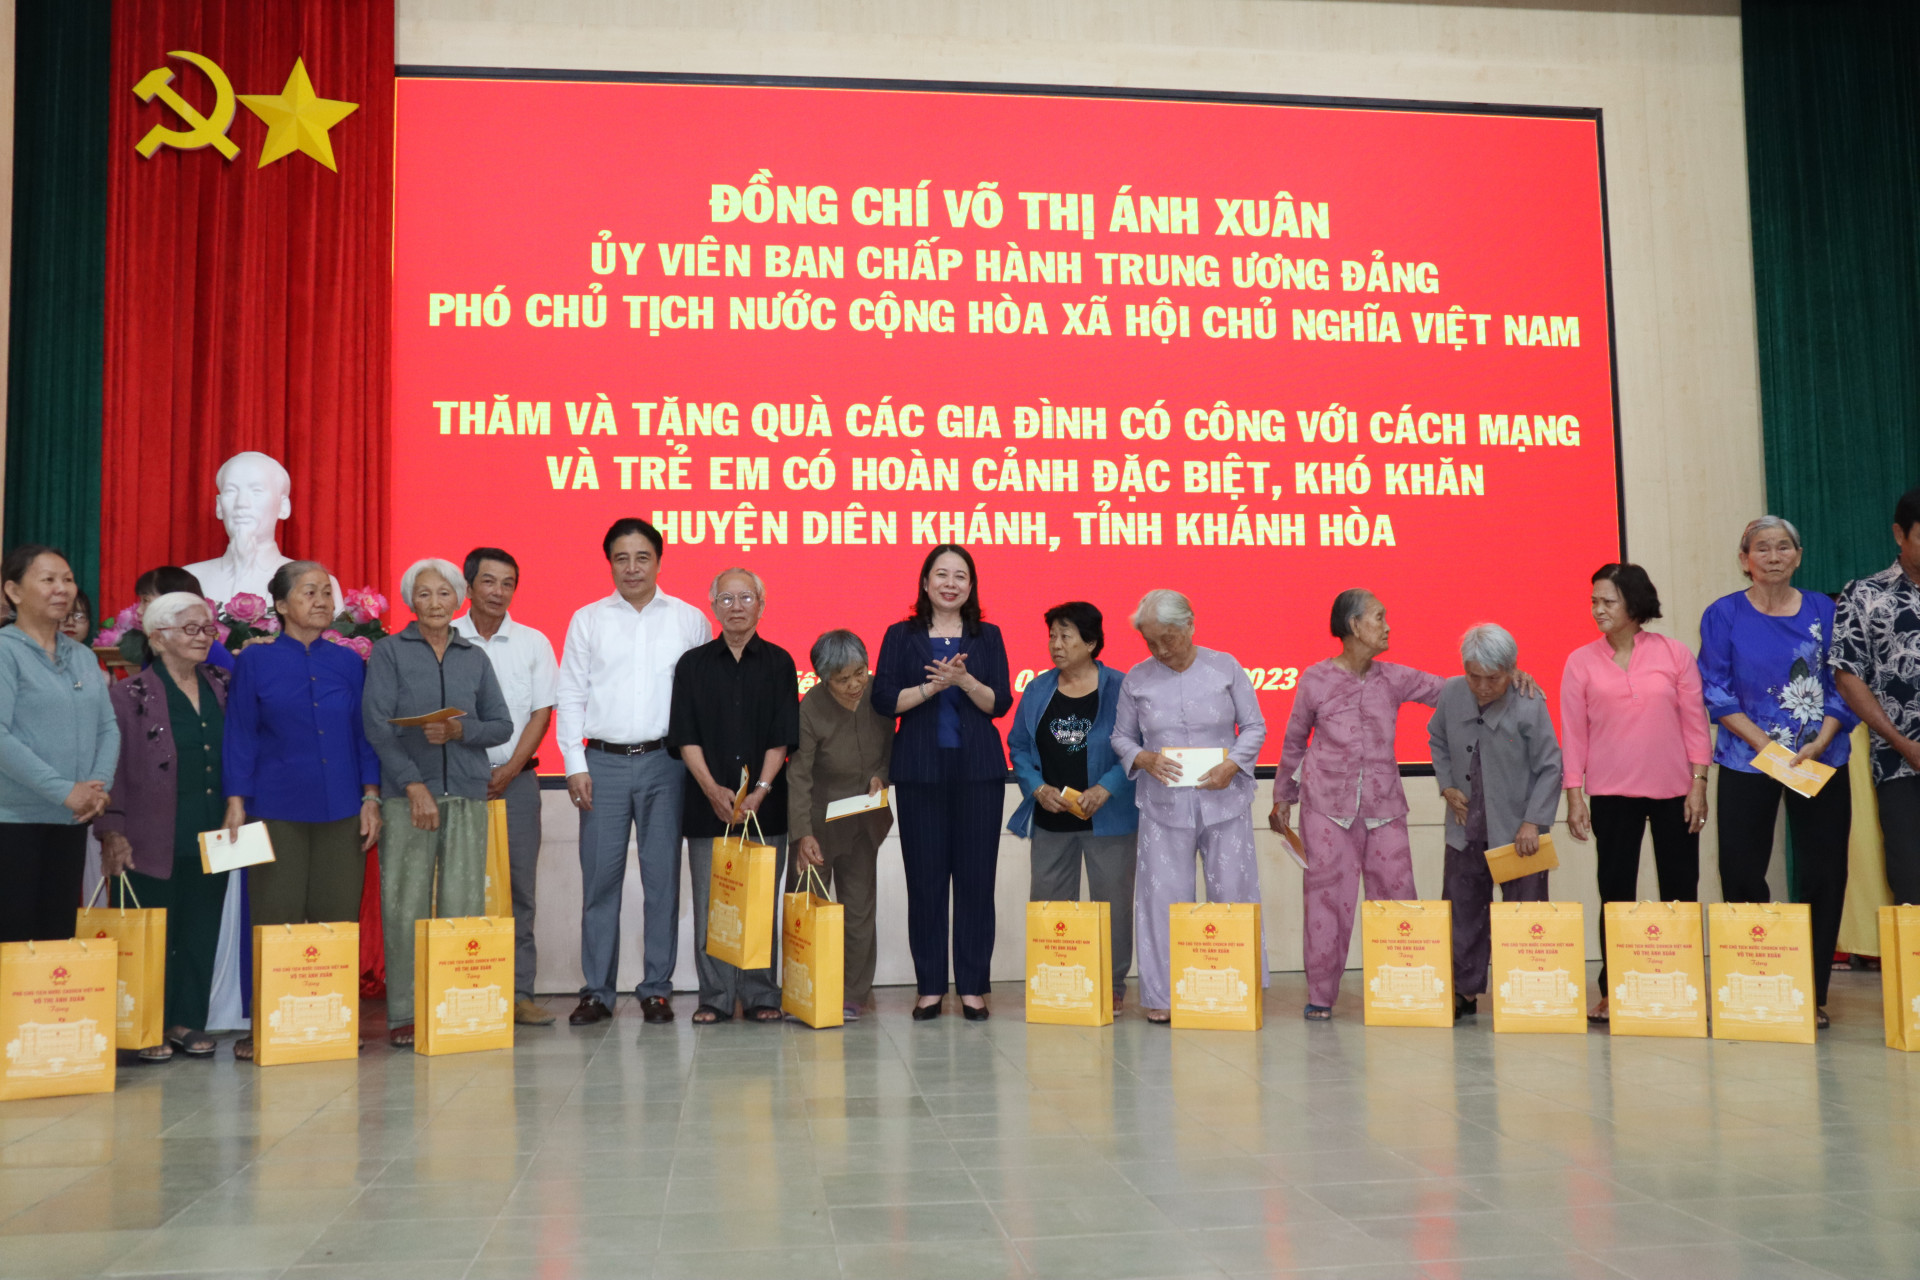 Phó Chủ tịch nước Võ Thị Ánh Xuân và ông Nguyễn Khắc Toàn tặng quà cho các gia đình cách mạng.